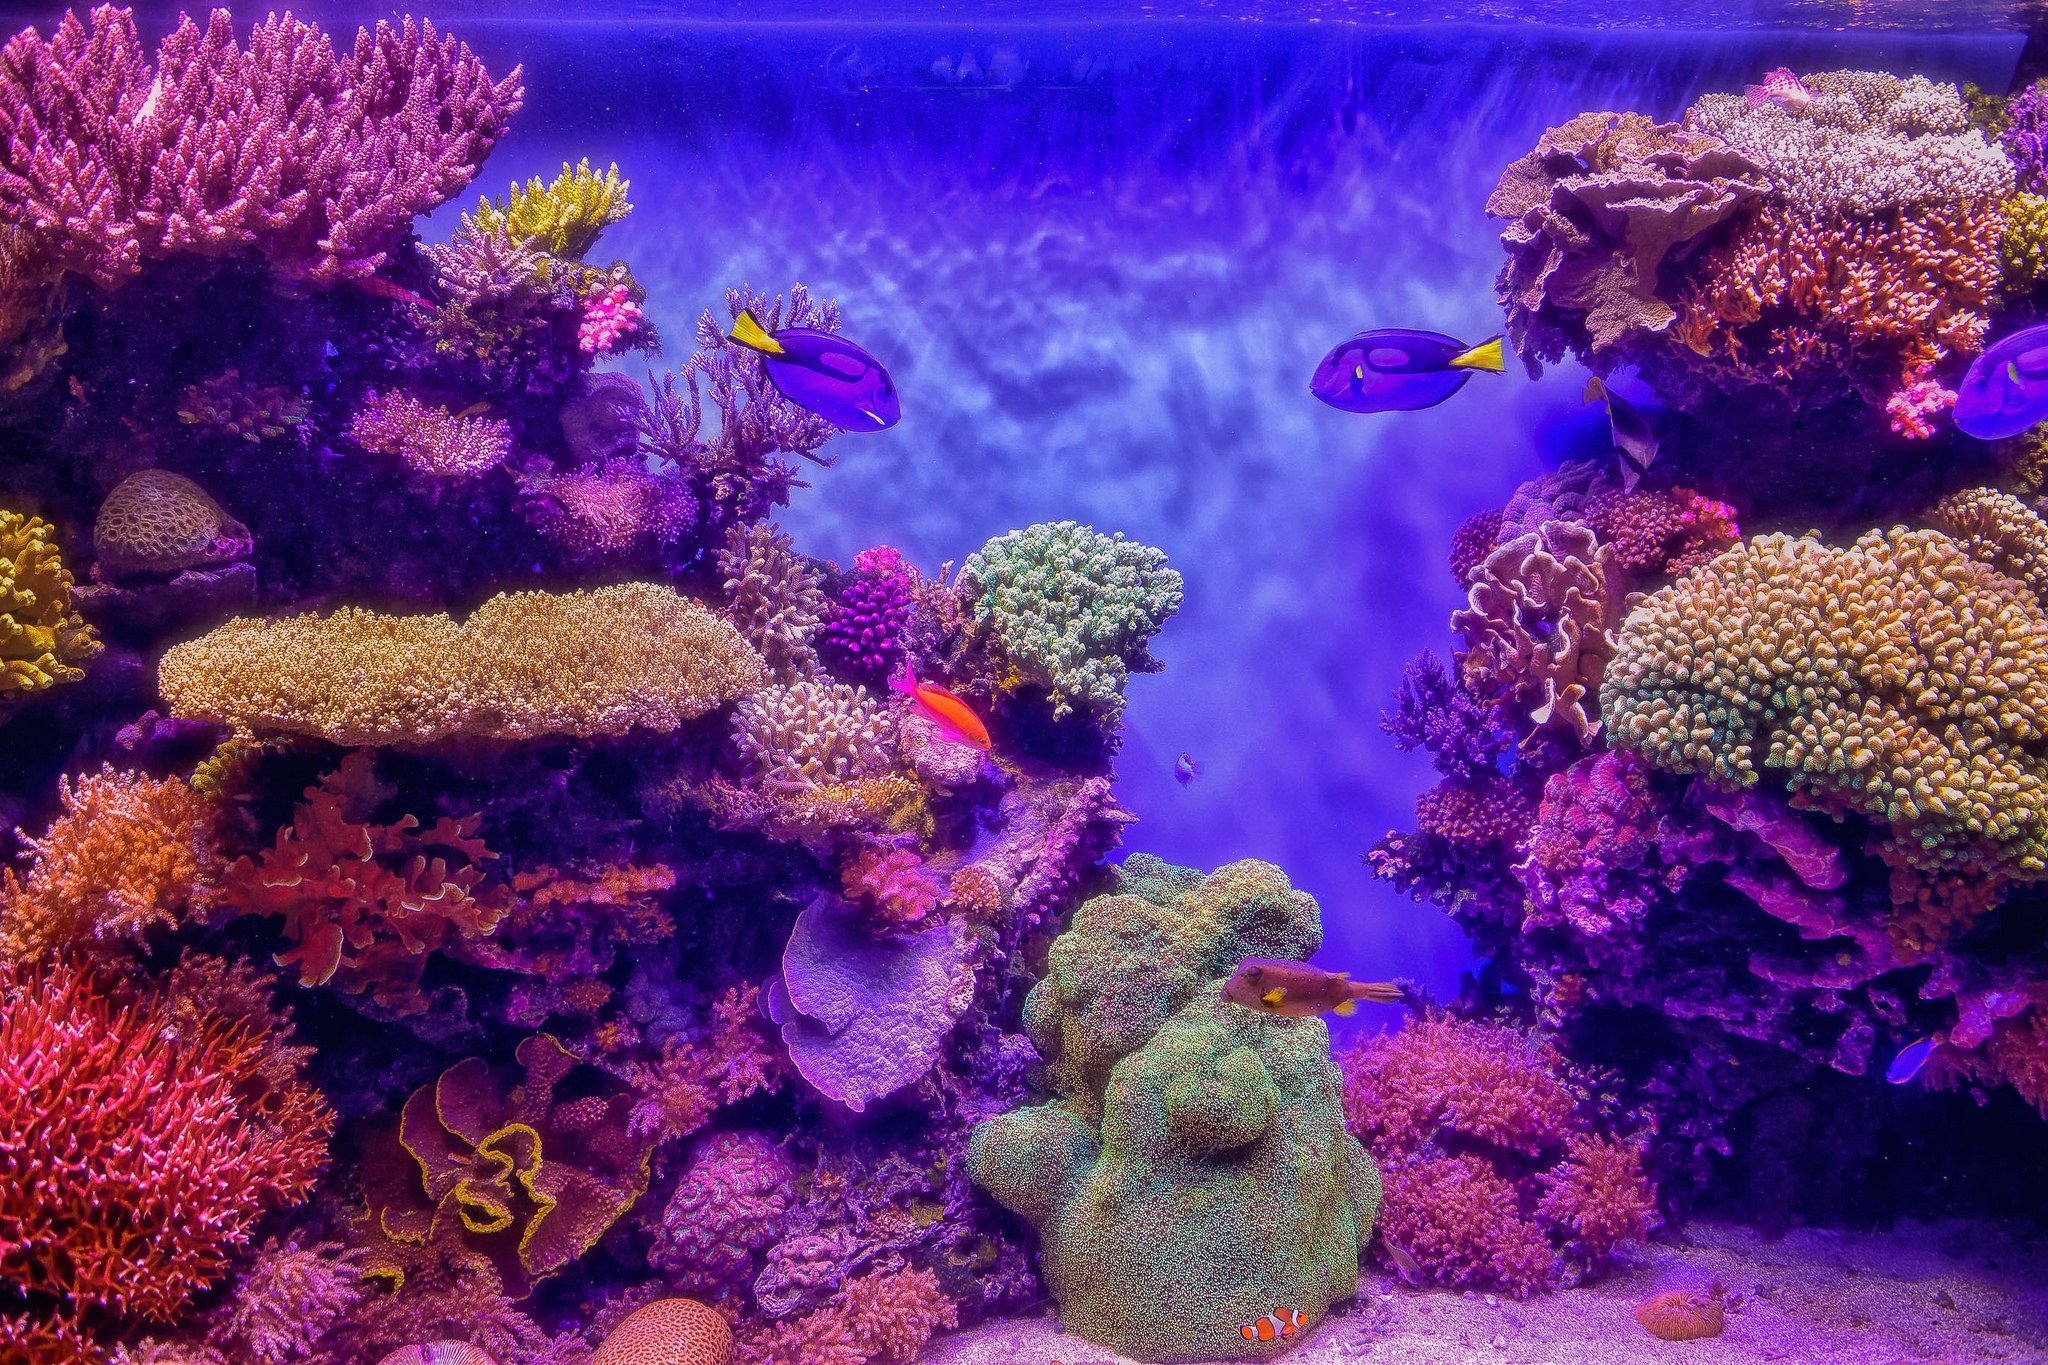 Coral video. Коралловый риф Акропора. Морские кораллы. Морское дно с кораллами. Подводный мир океана.